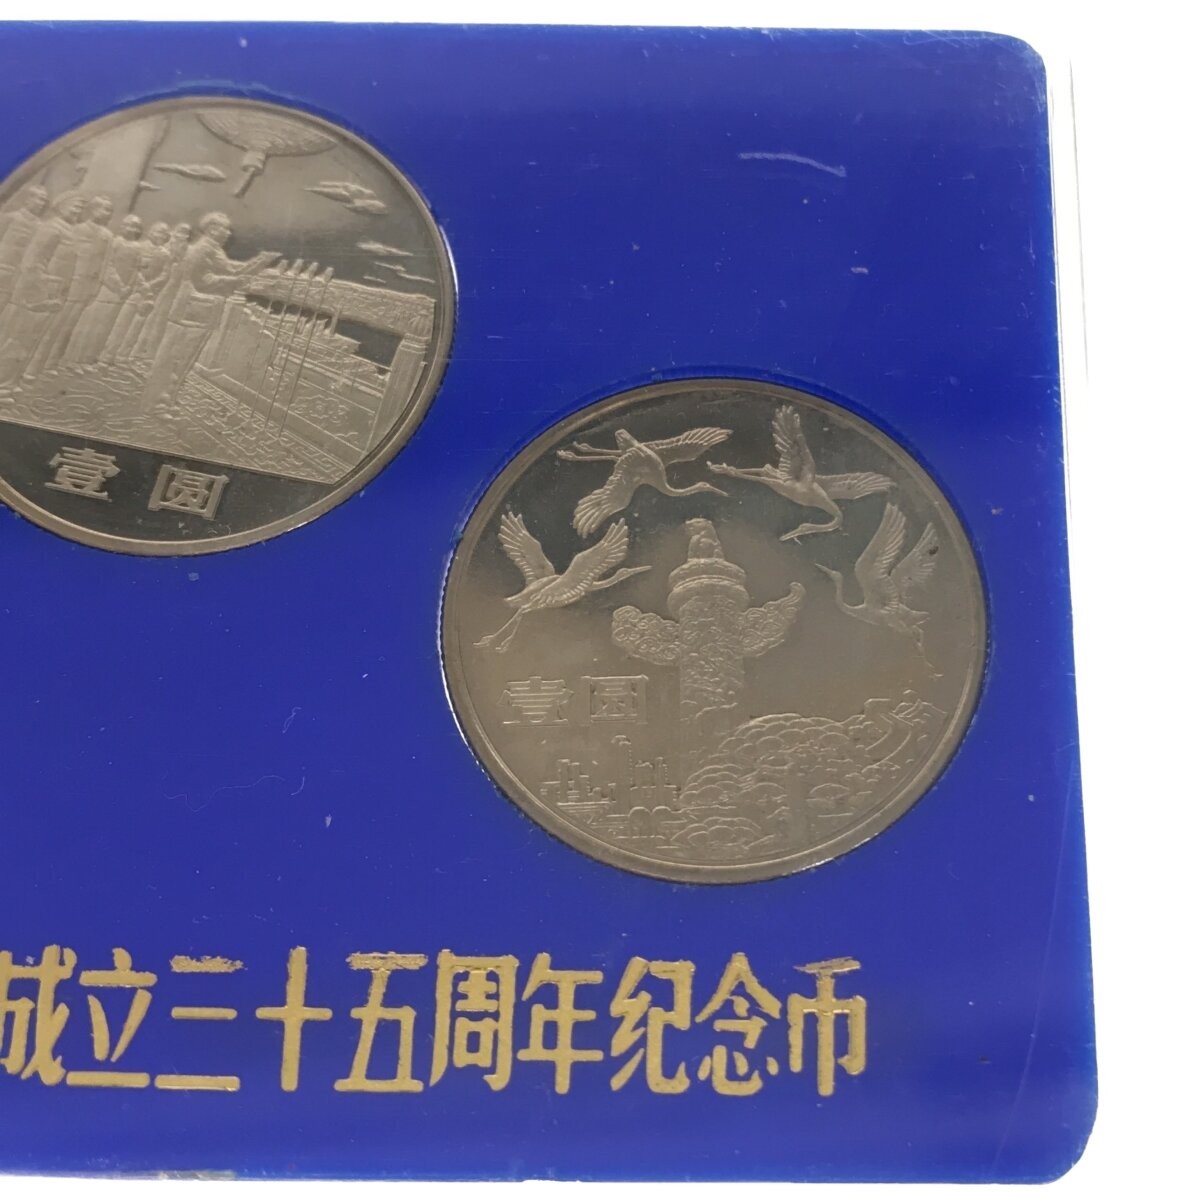 【希少品】中華人民共和国成立35周年 一円白銅貨 記念貨幣セット 1949-1984 3種セット 中国コイン 中国人民銀行 中国造幣谷司 限定品 M661_画像5